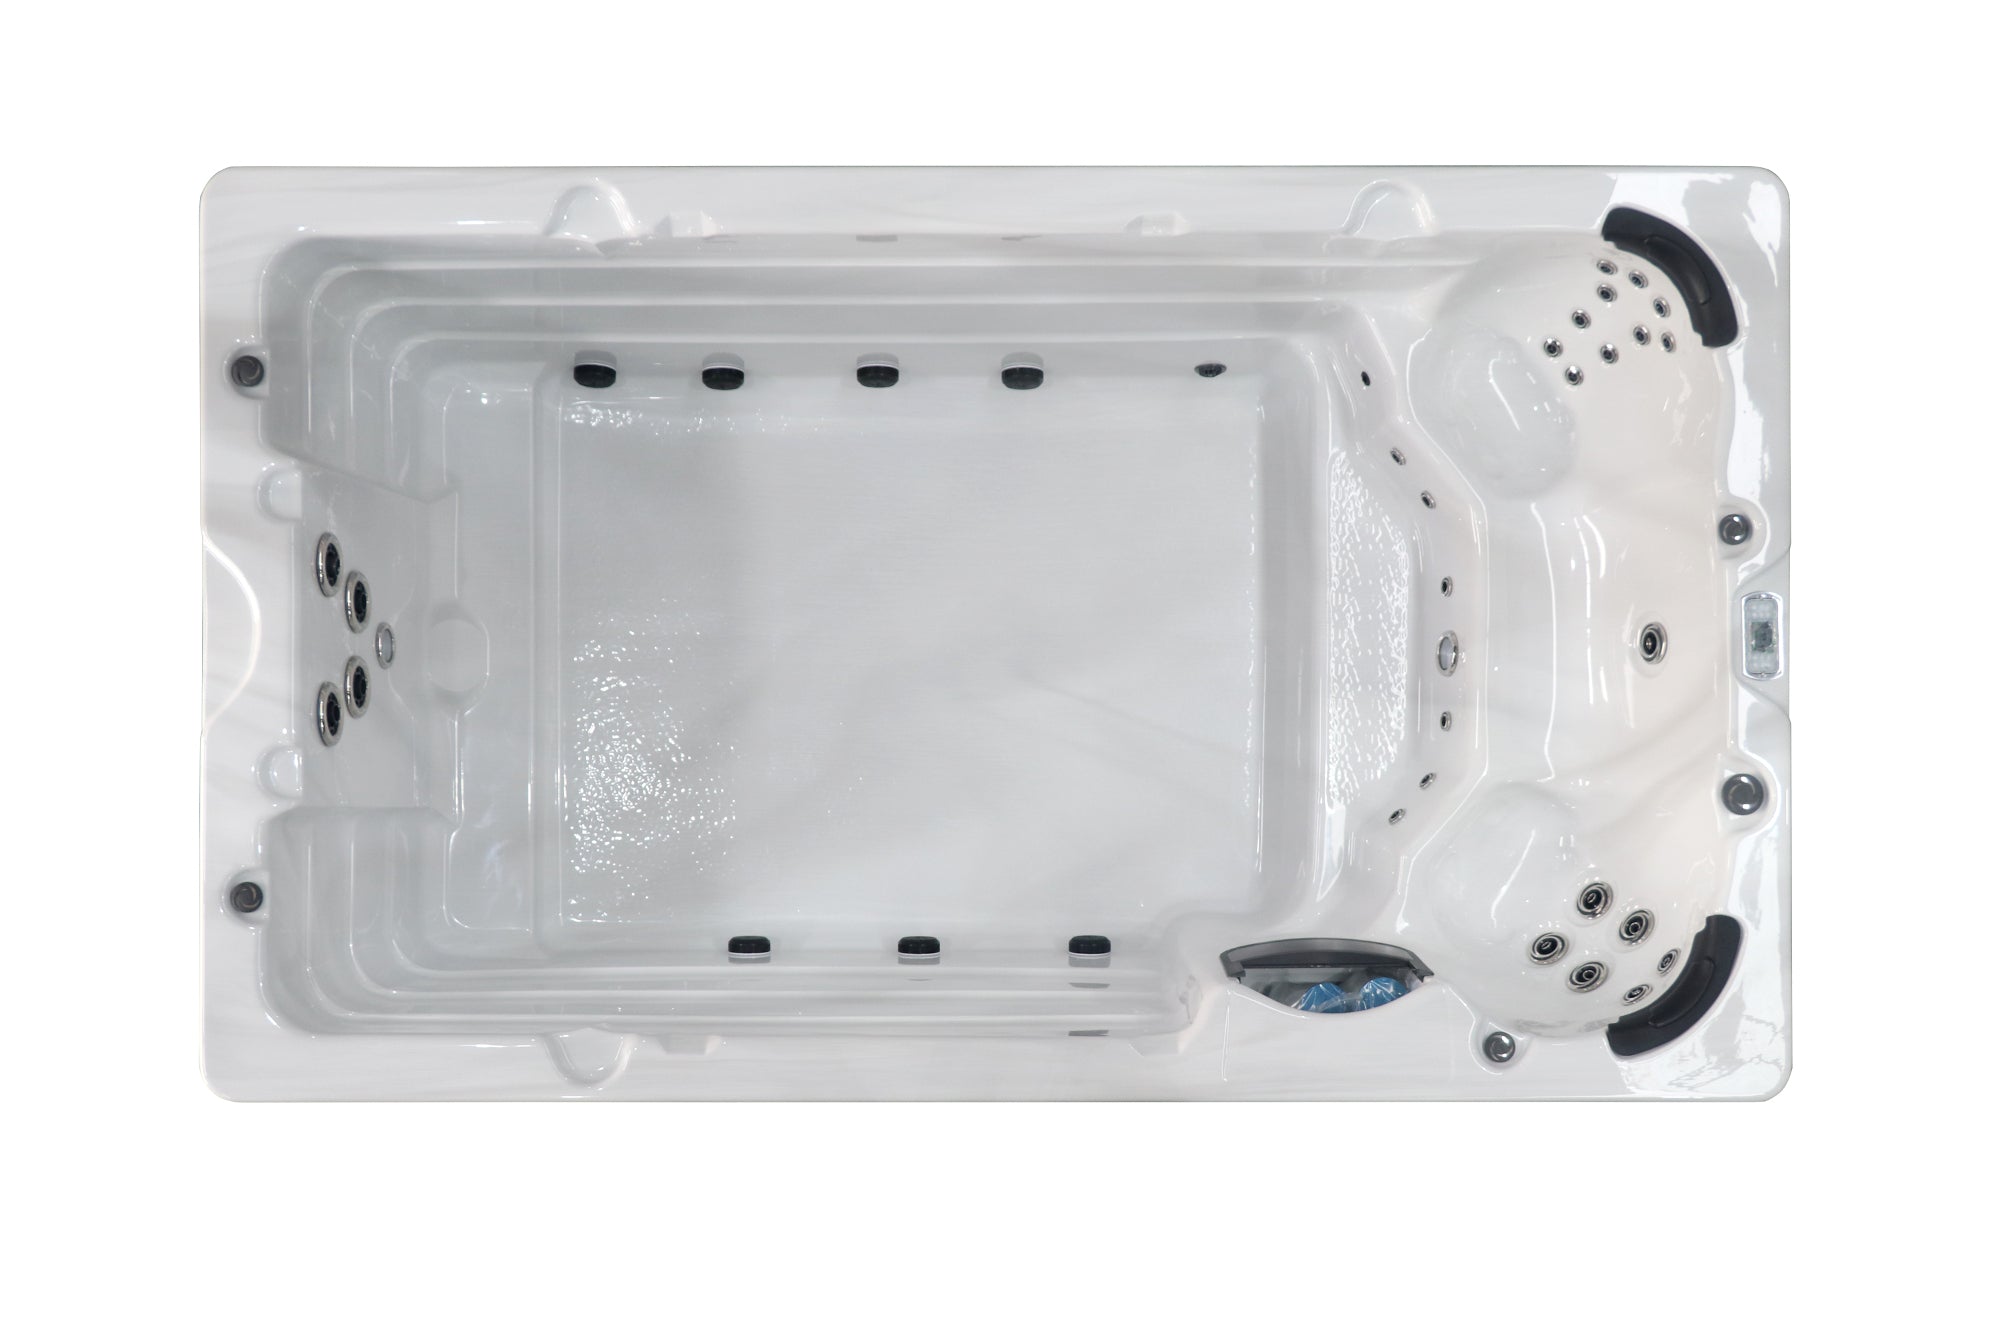 Sanotechnik Schwimm-Whirlpool IBIZA mit 27 Massagedüsen für 3 Personen mit WiFi-Steuersystem, Bluetooth Audiosystem und LED Beleuchtung